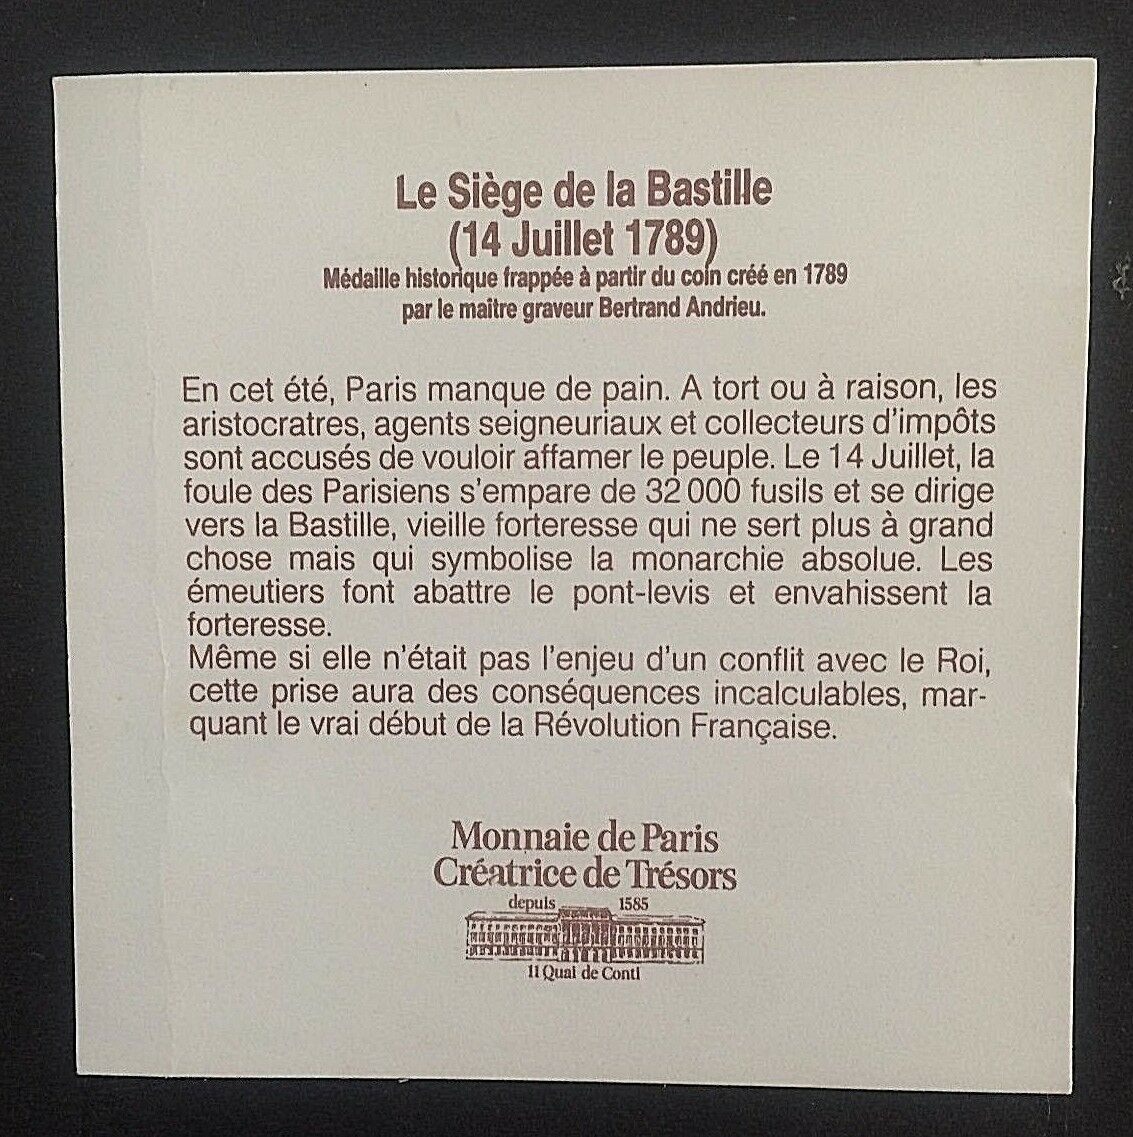 (SUPERSONIC) CONCORDE by AIR FRANCE BASTILLE BOXED UNC MEDAL by MONNAIE de PARIS